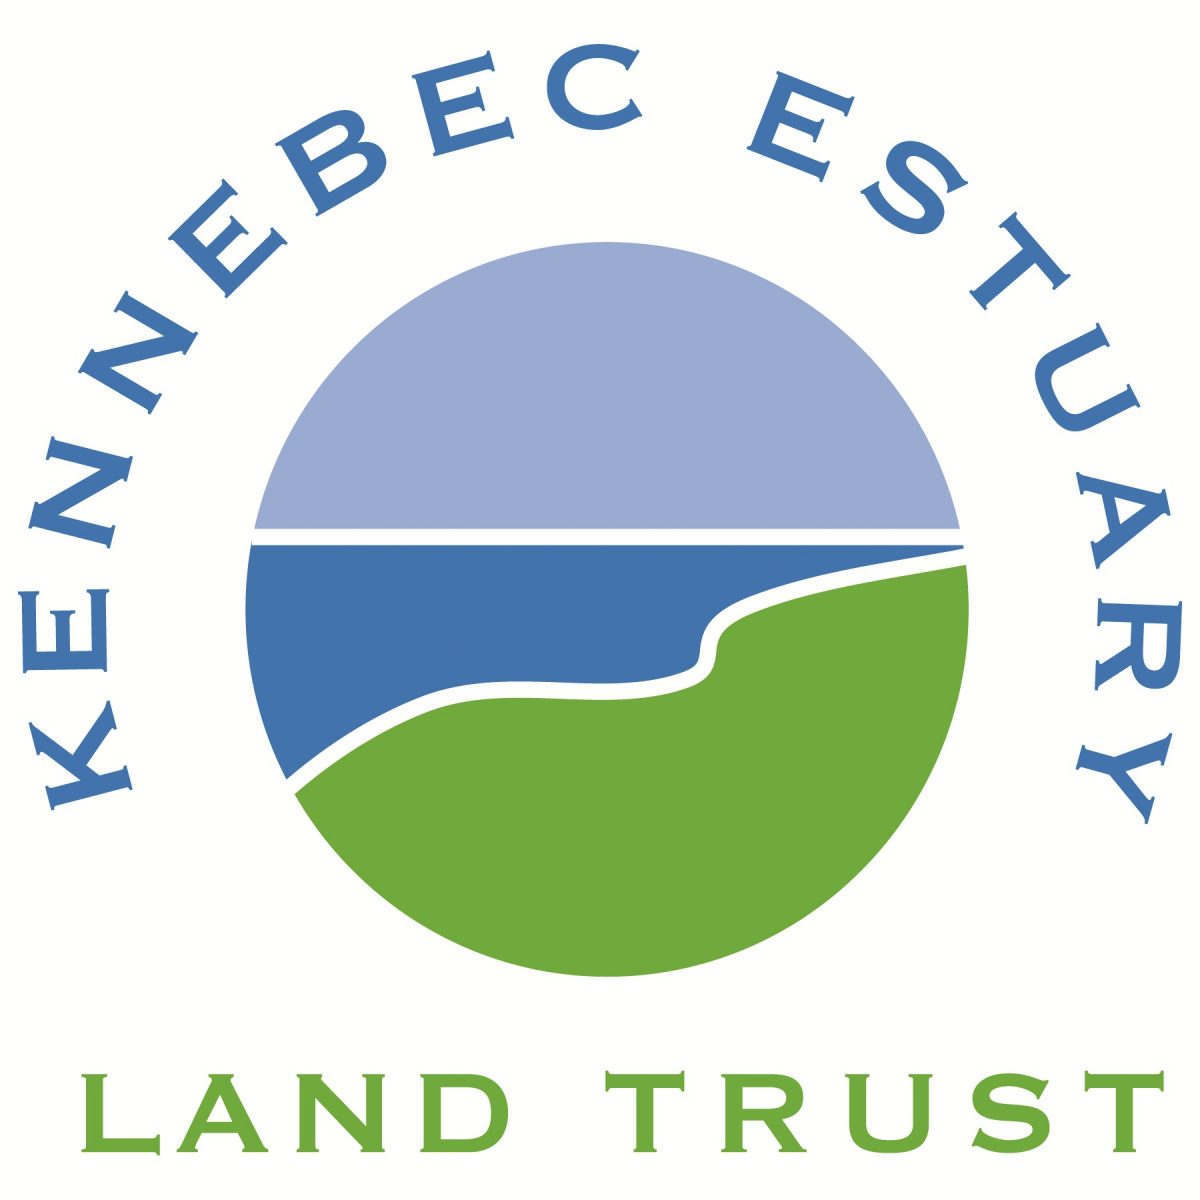 Kennebec Estuary Land Trust